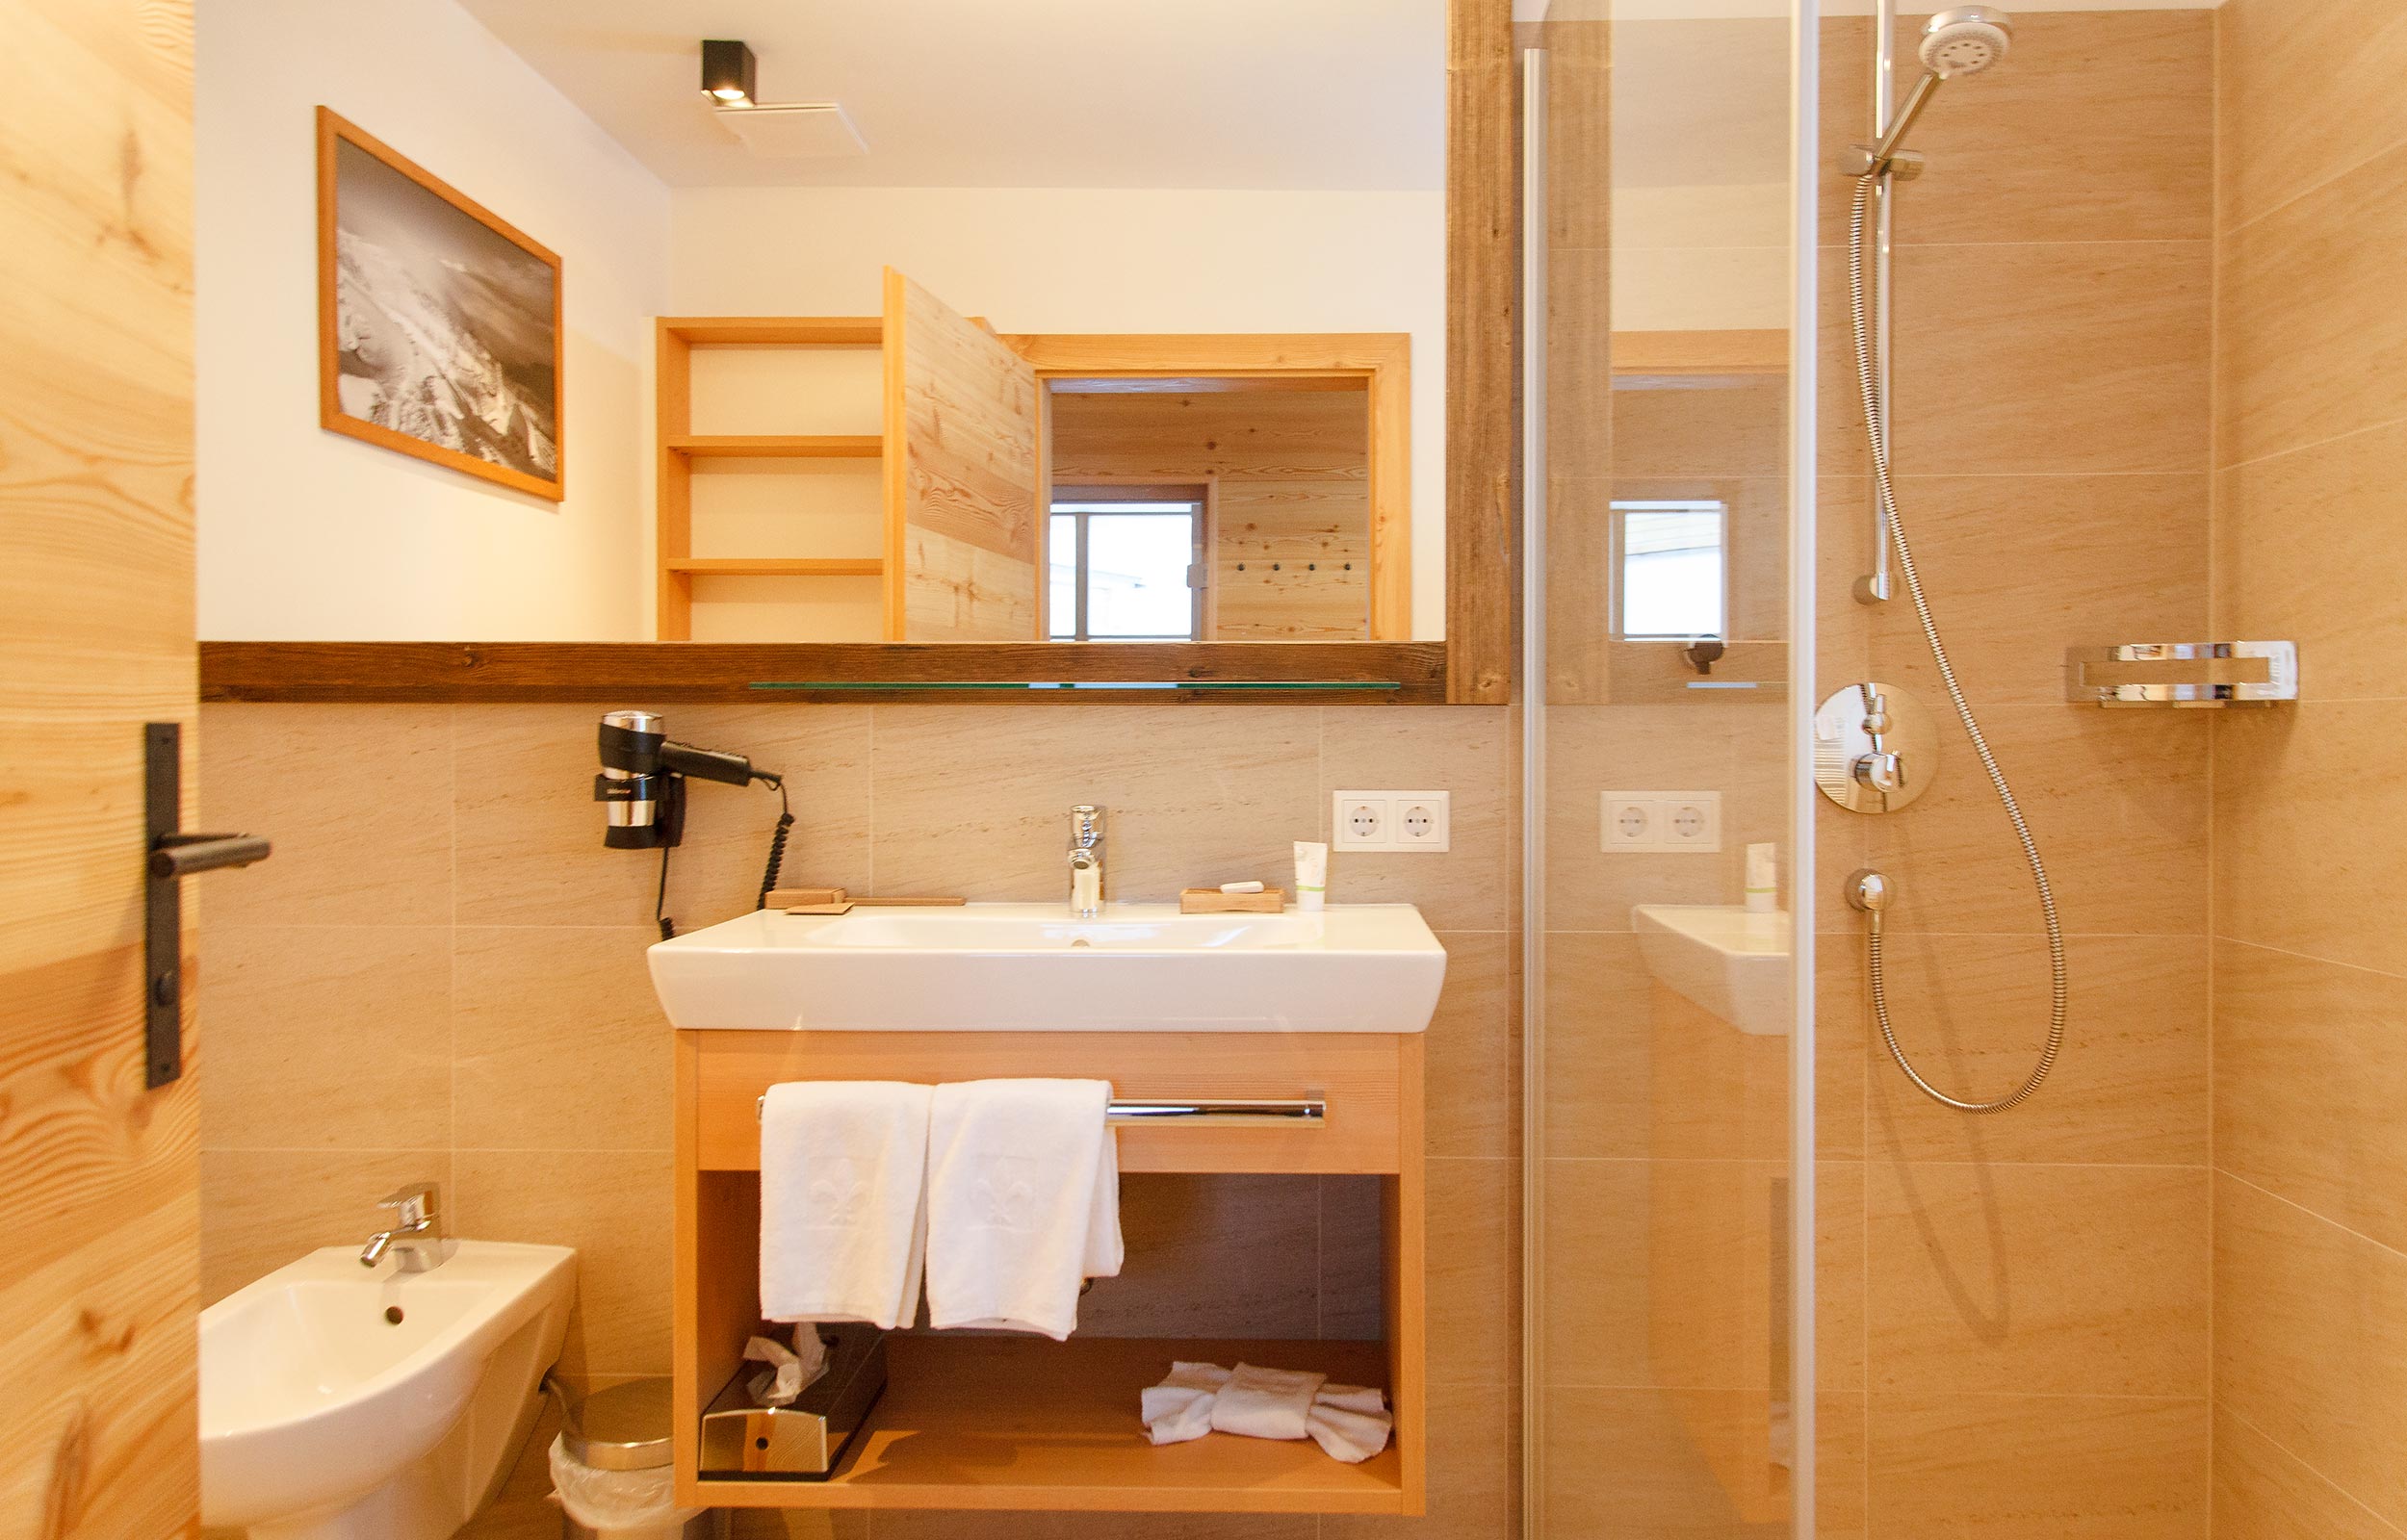 Ein vollausgestattetes Badezimmer im Chalet mit Dusche, Bidet und einem Waschbecken